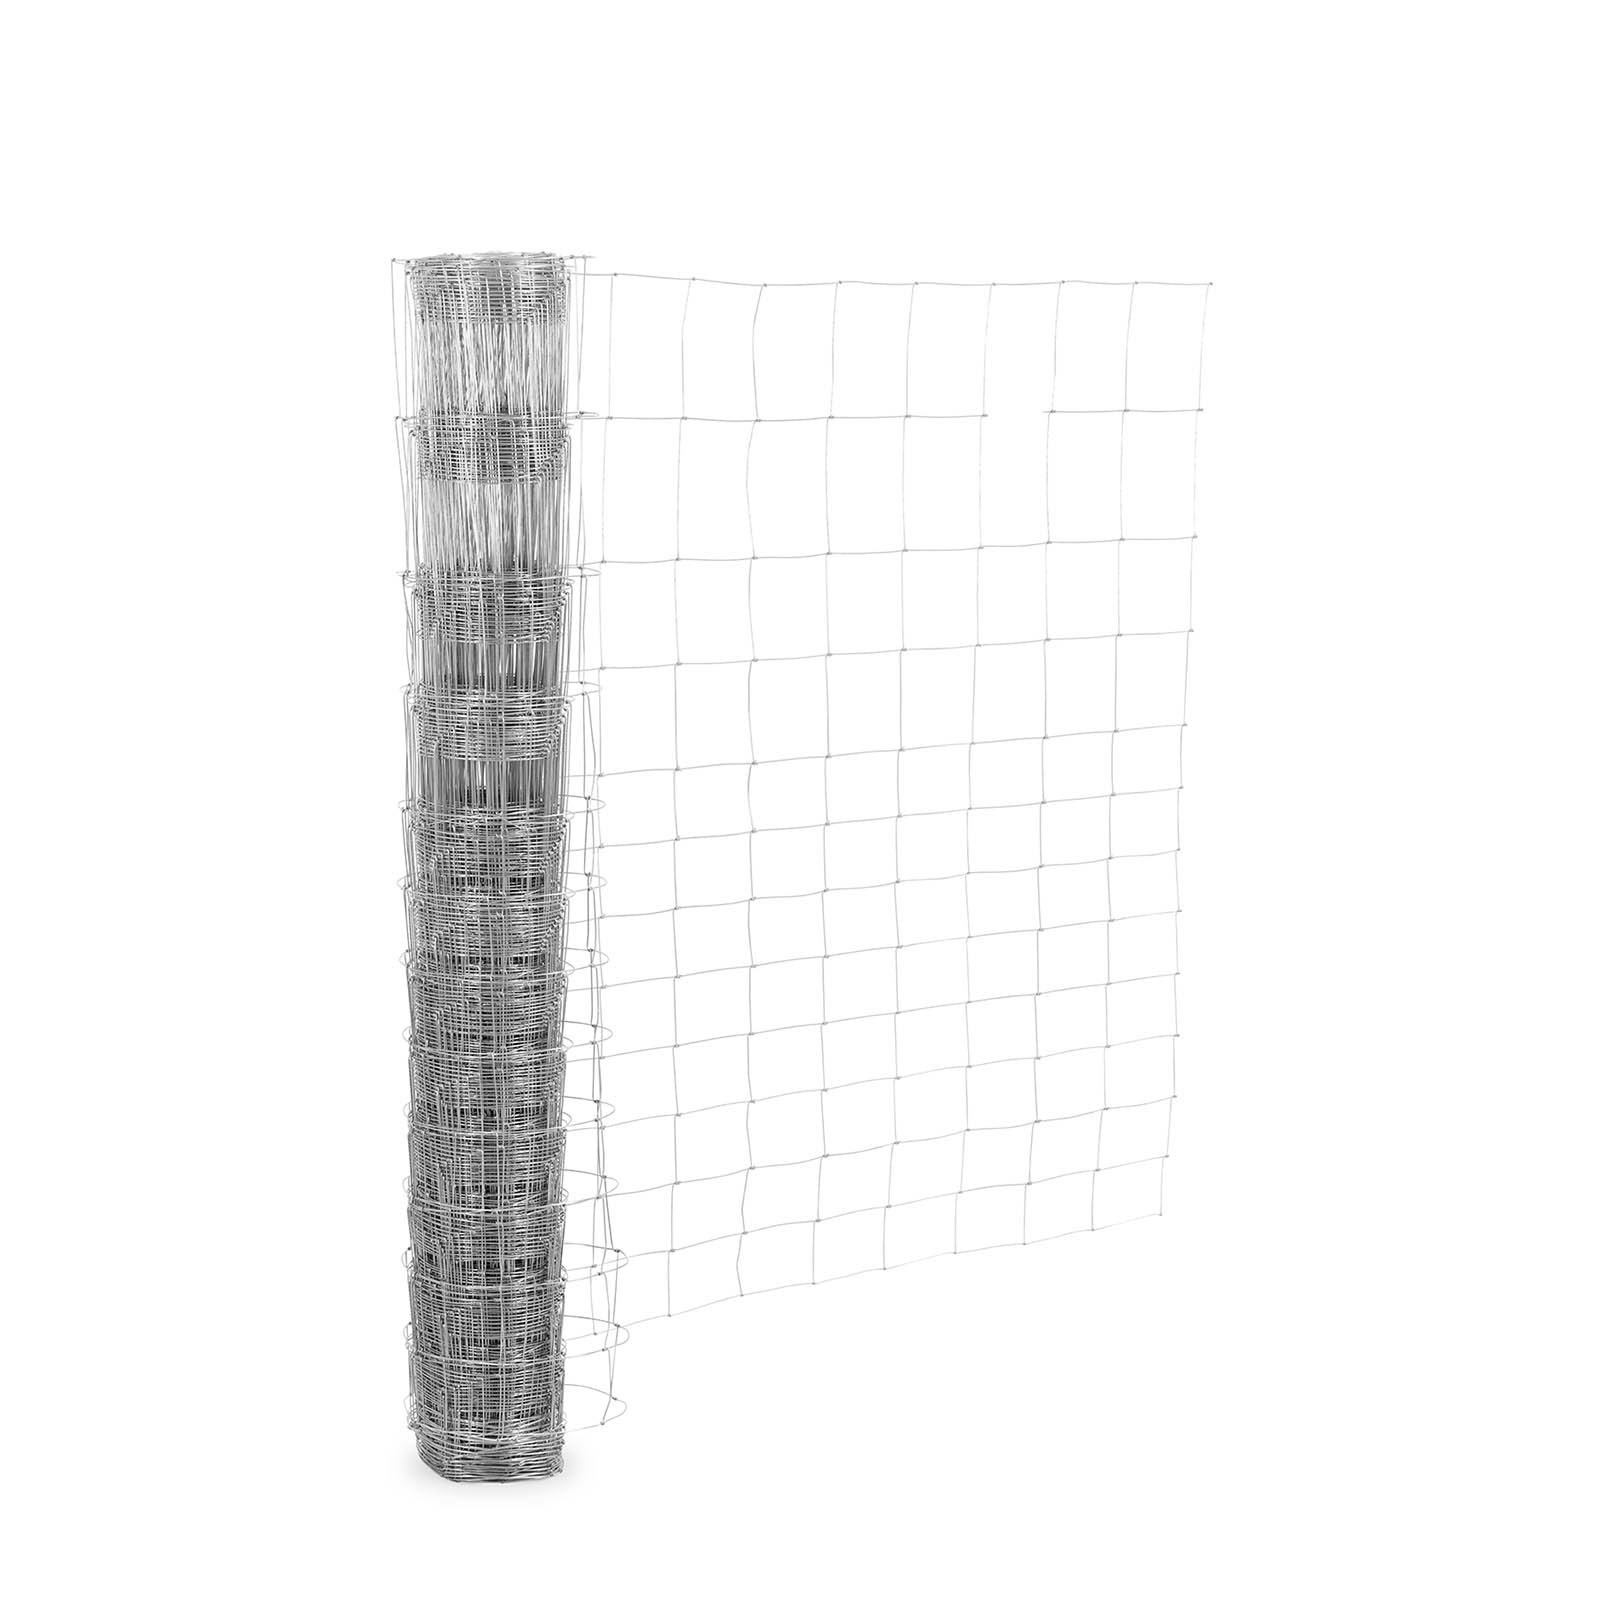 Ograja za pašnik - višina {{Višina_}} cm - dolžina 50 m - širina mreže 15 cm